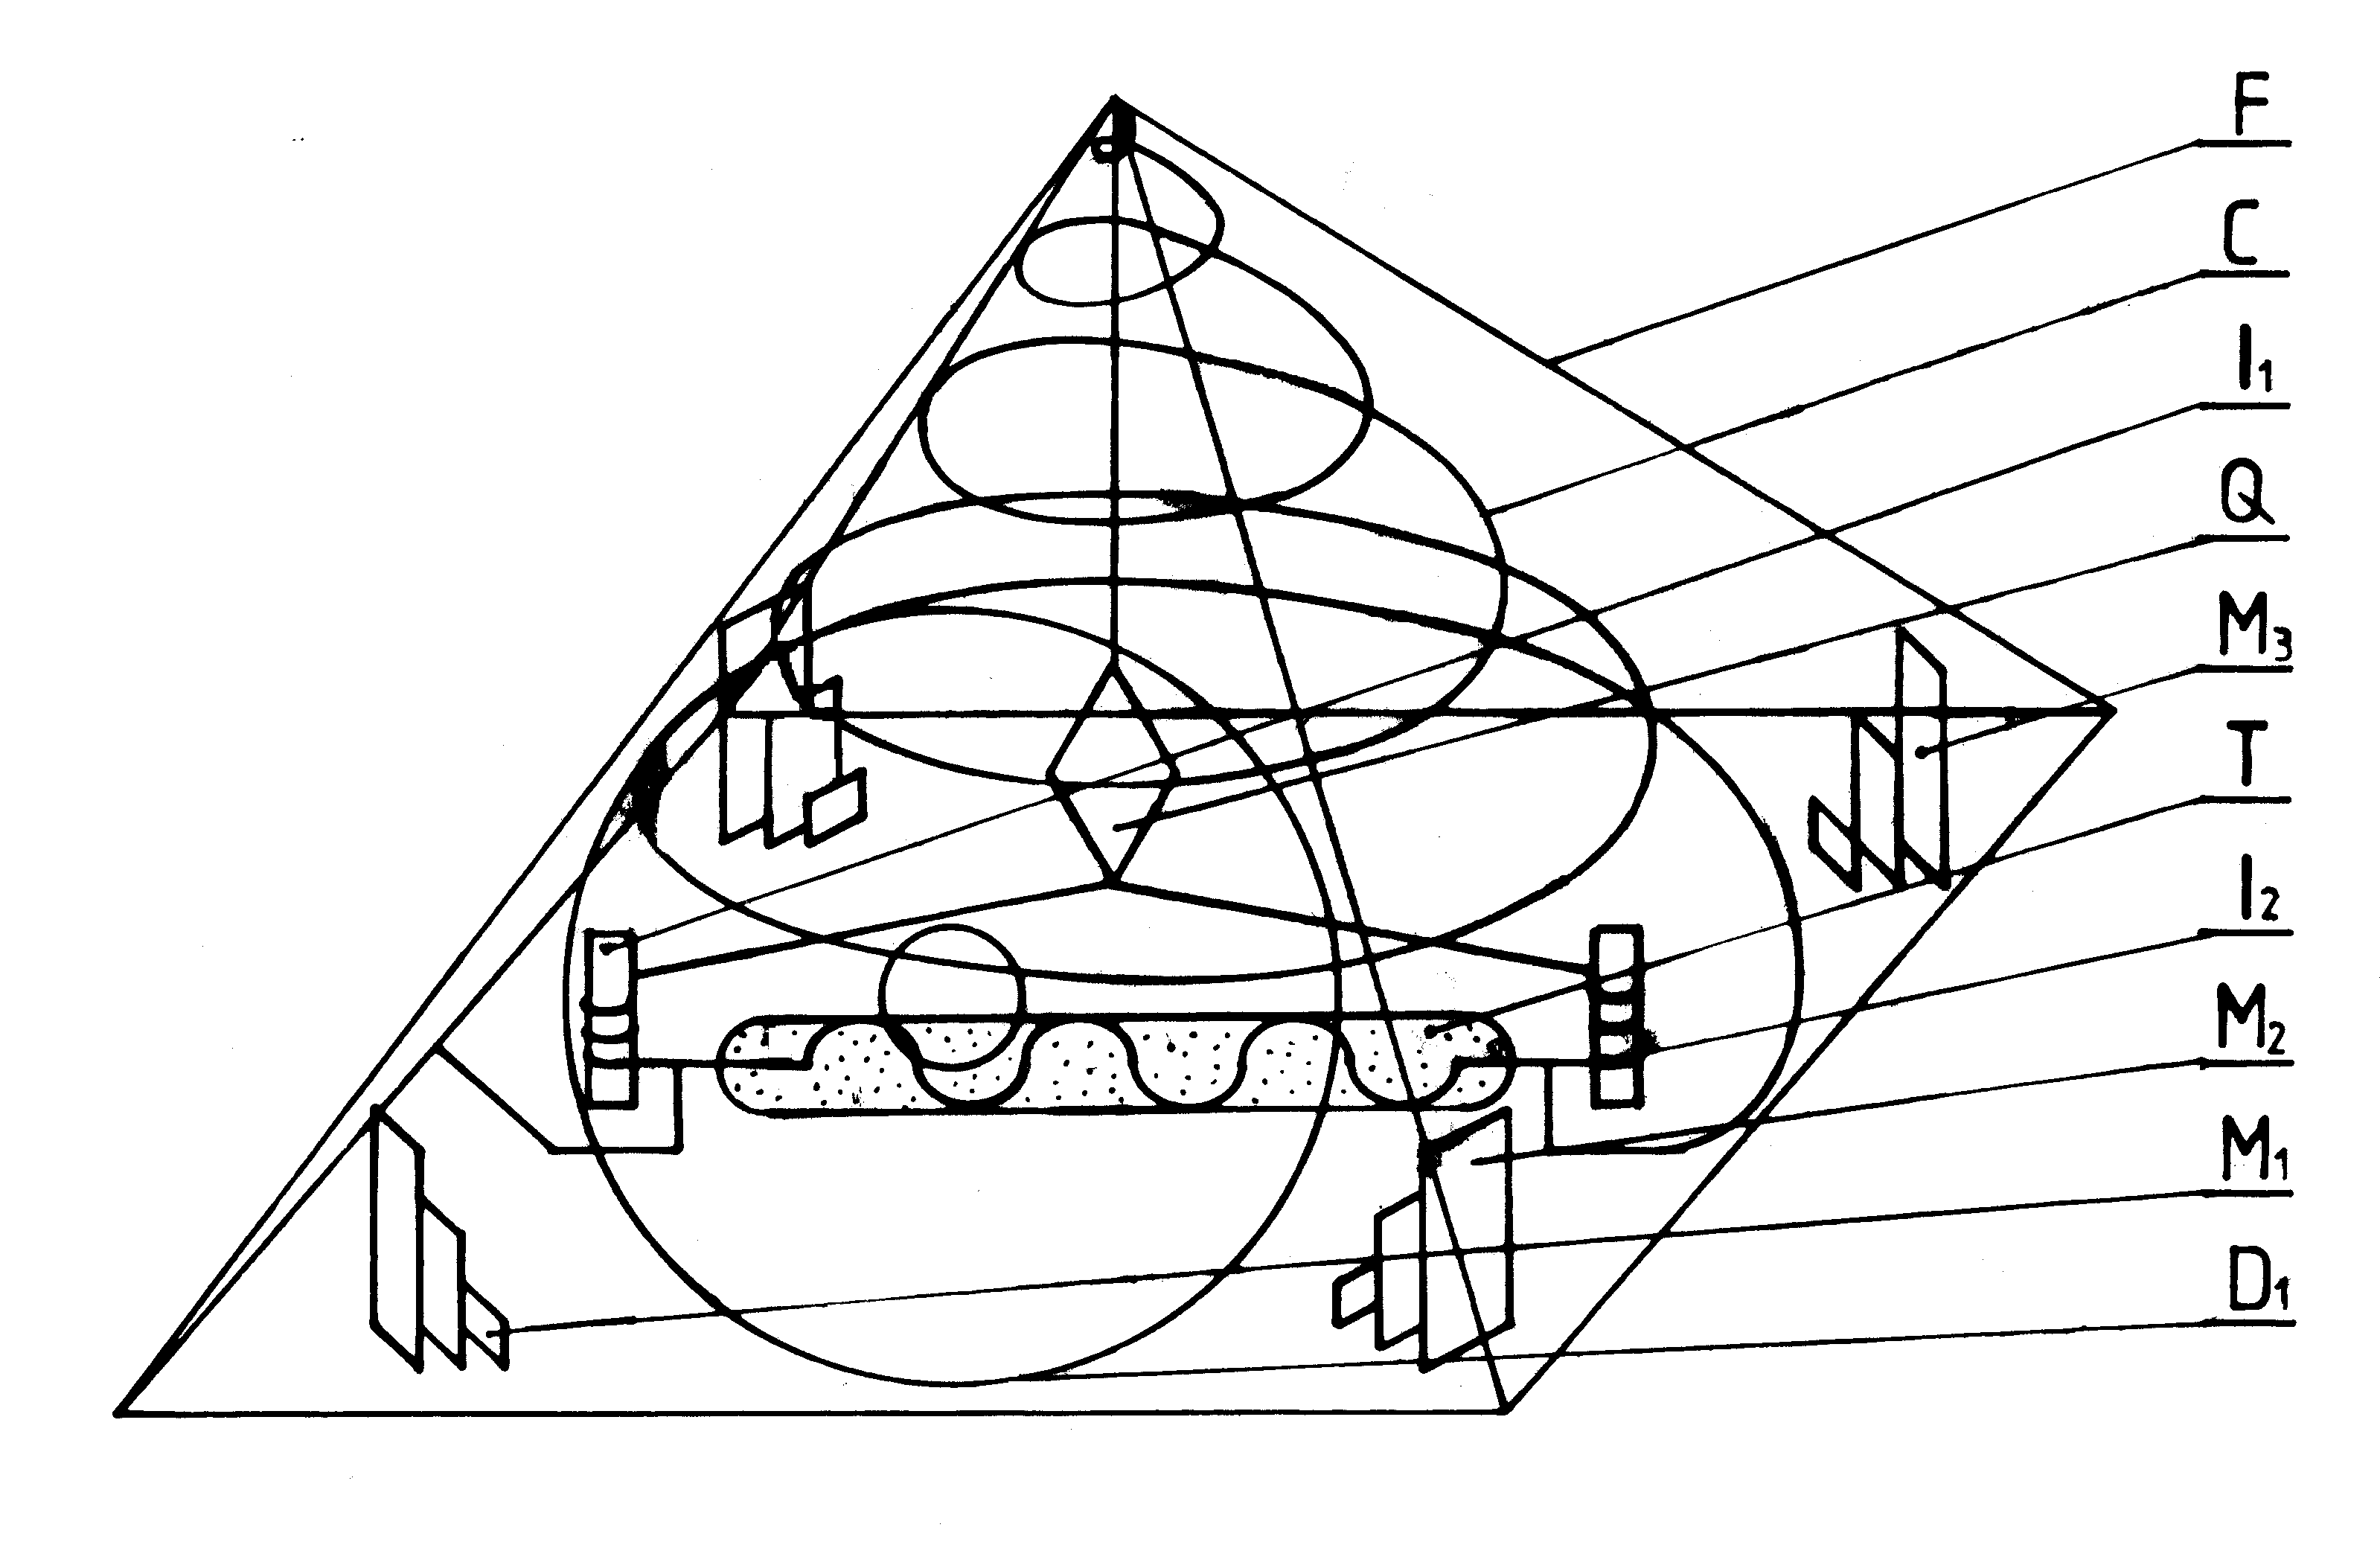 Fot. #C3: Konstrukcja piramidy telepatycznej (Rys. K2 z [1/5]). Odnotuj ze z powodu działania tzw. przekleństwa wynalazców, co wazniejsze ilustracje mogą tu być wymazane. Szukaj wowczas tych ilustracji na innych stronach wskazabych w Menu (np. na stronie o darmowej energii lub w monografii [1/5]).